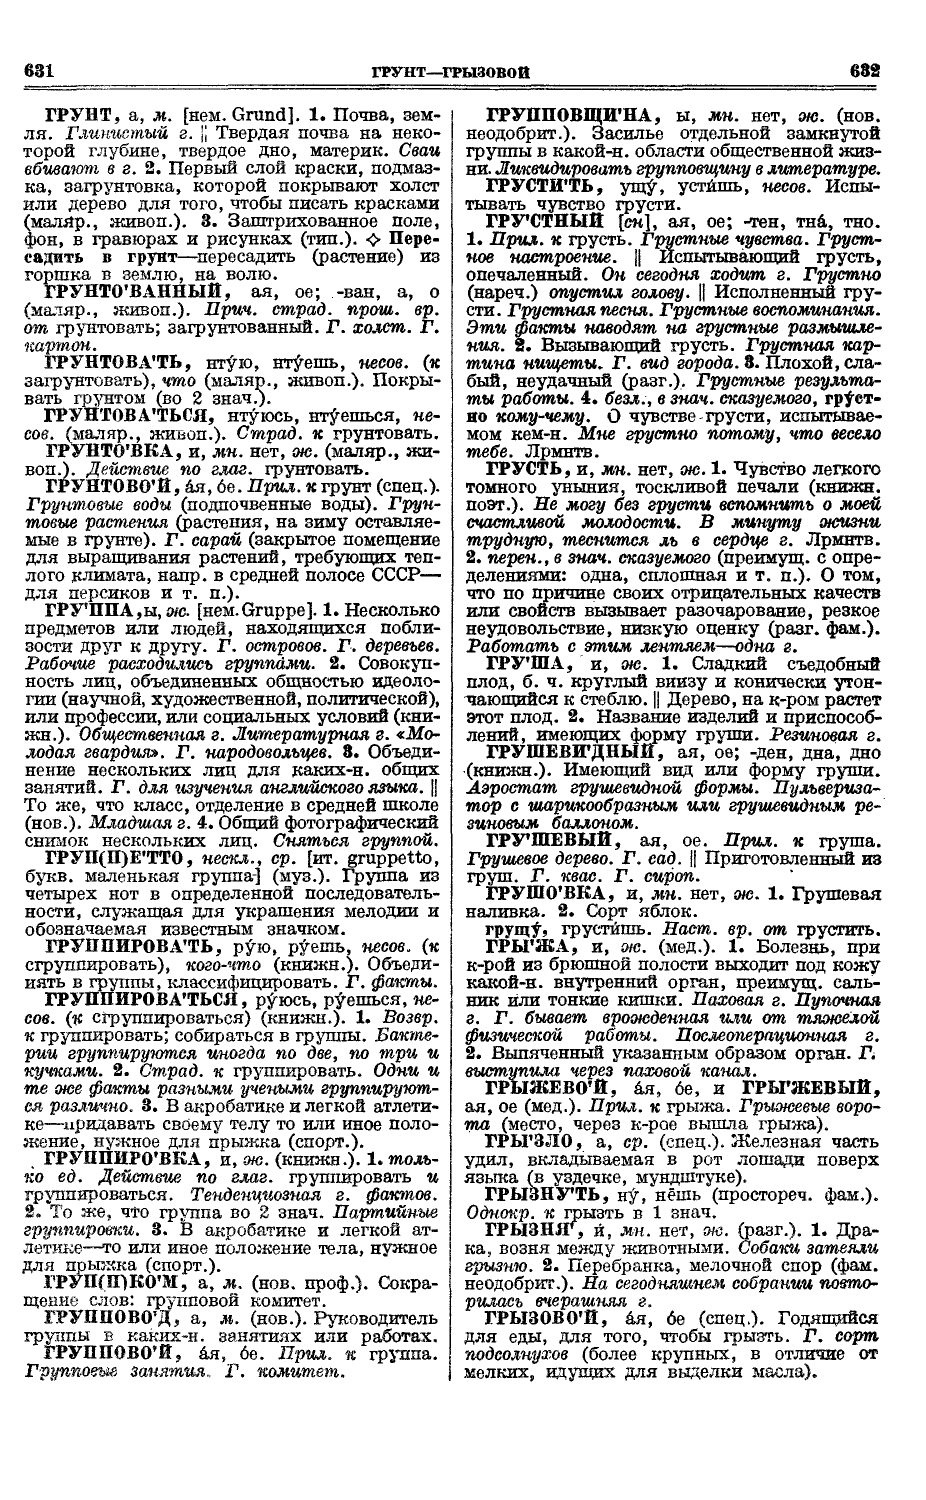 Фотокопия pdf / скан страницы 354 толкового словаря Ушакова (том 1)